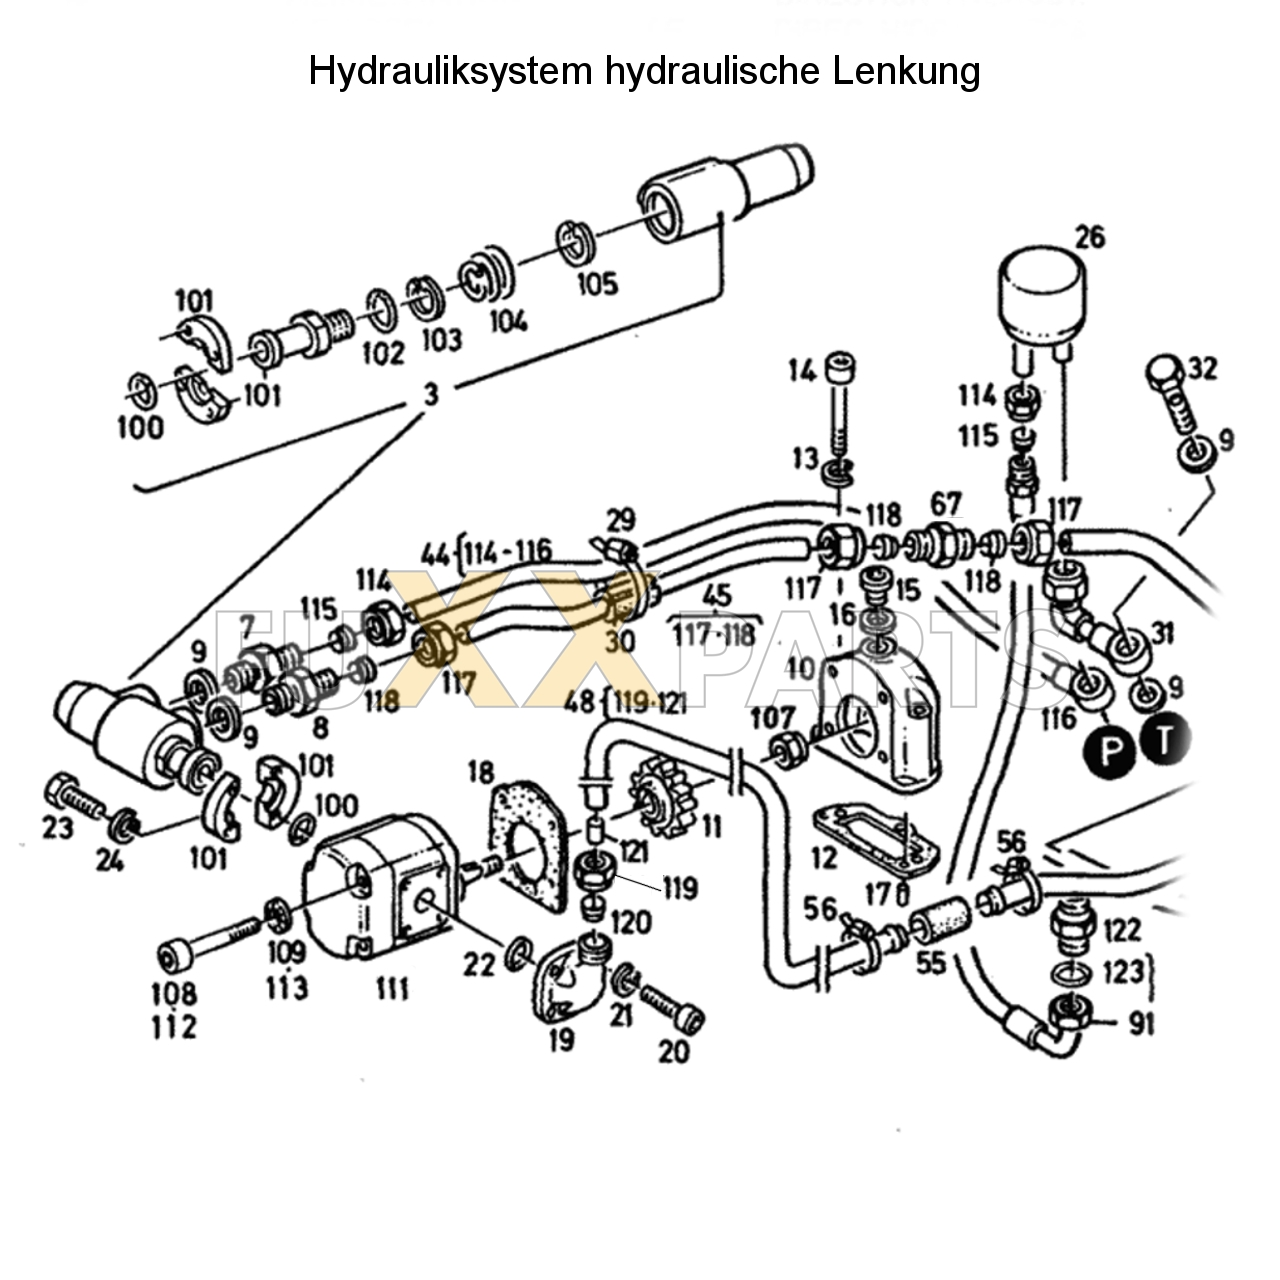 D 2807 Hydrauliksystem hyd. Lenkung